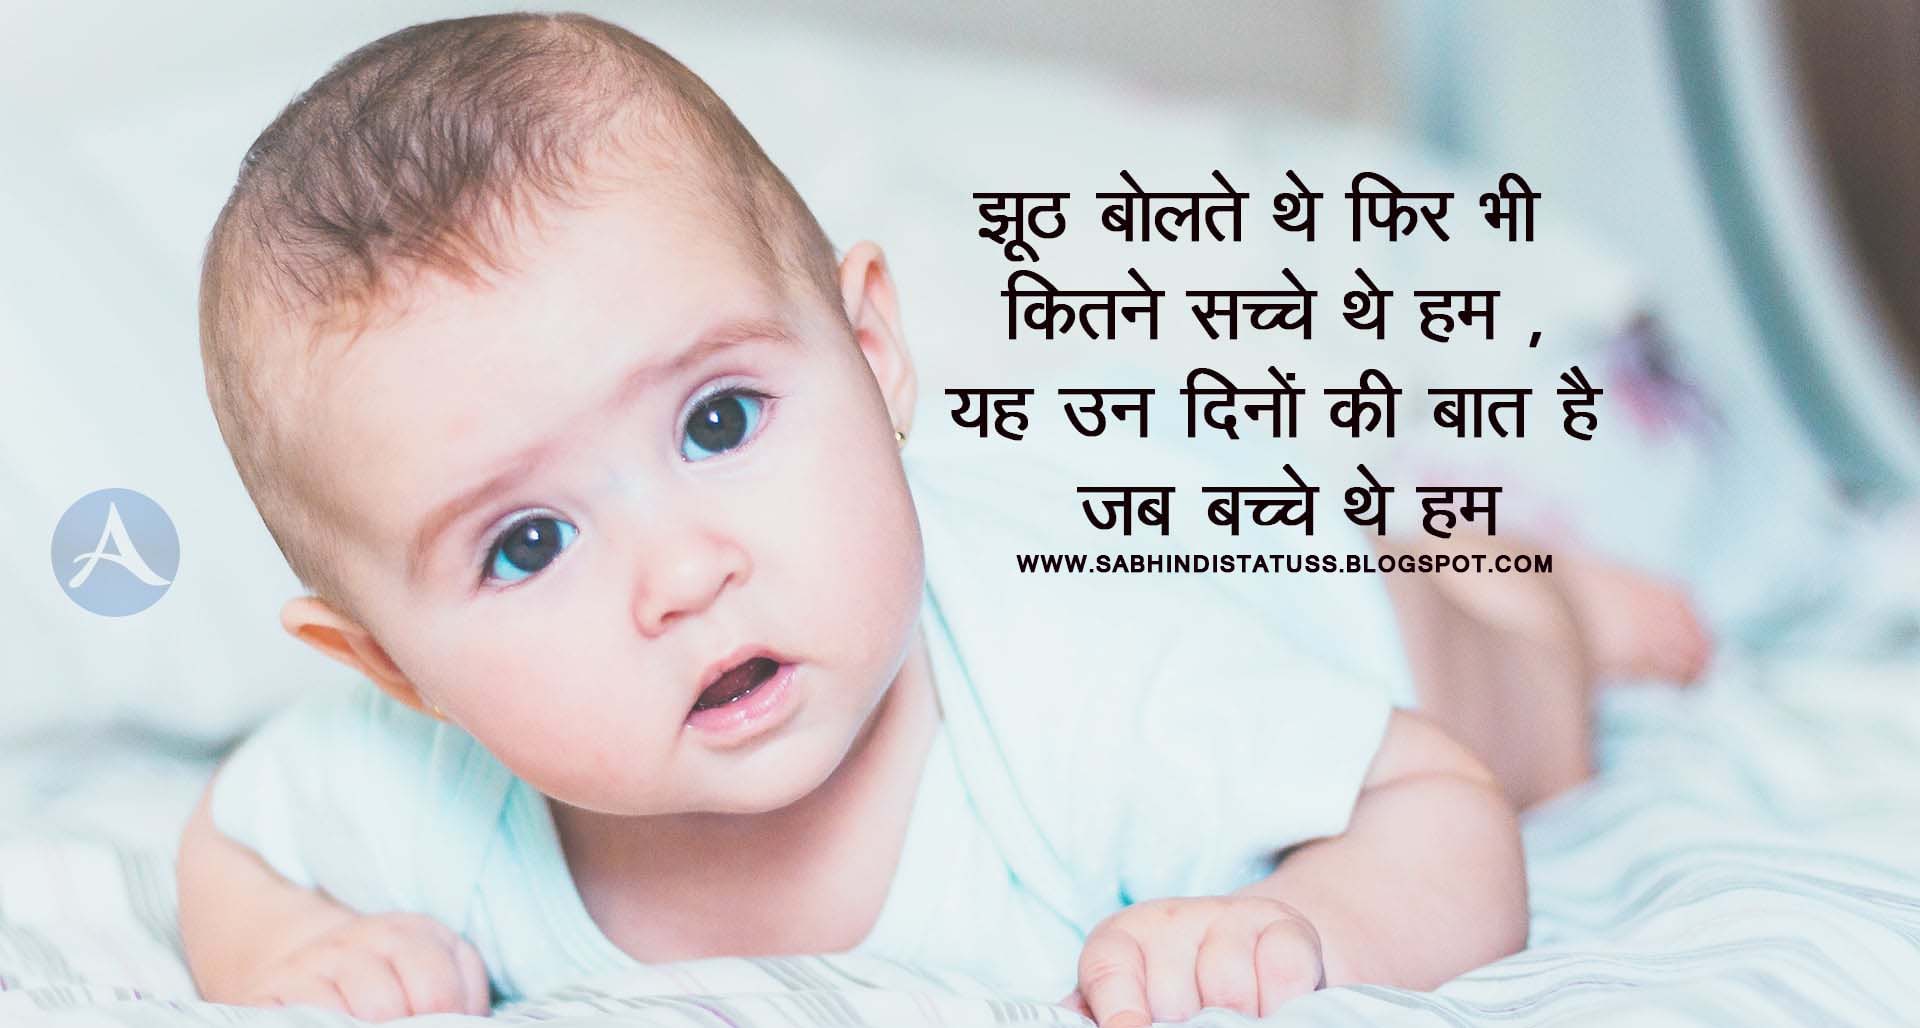 Whatsapp Status for Baby Boy in Hindi